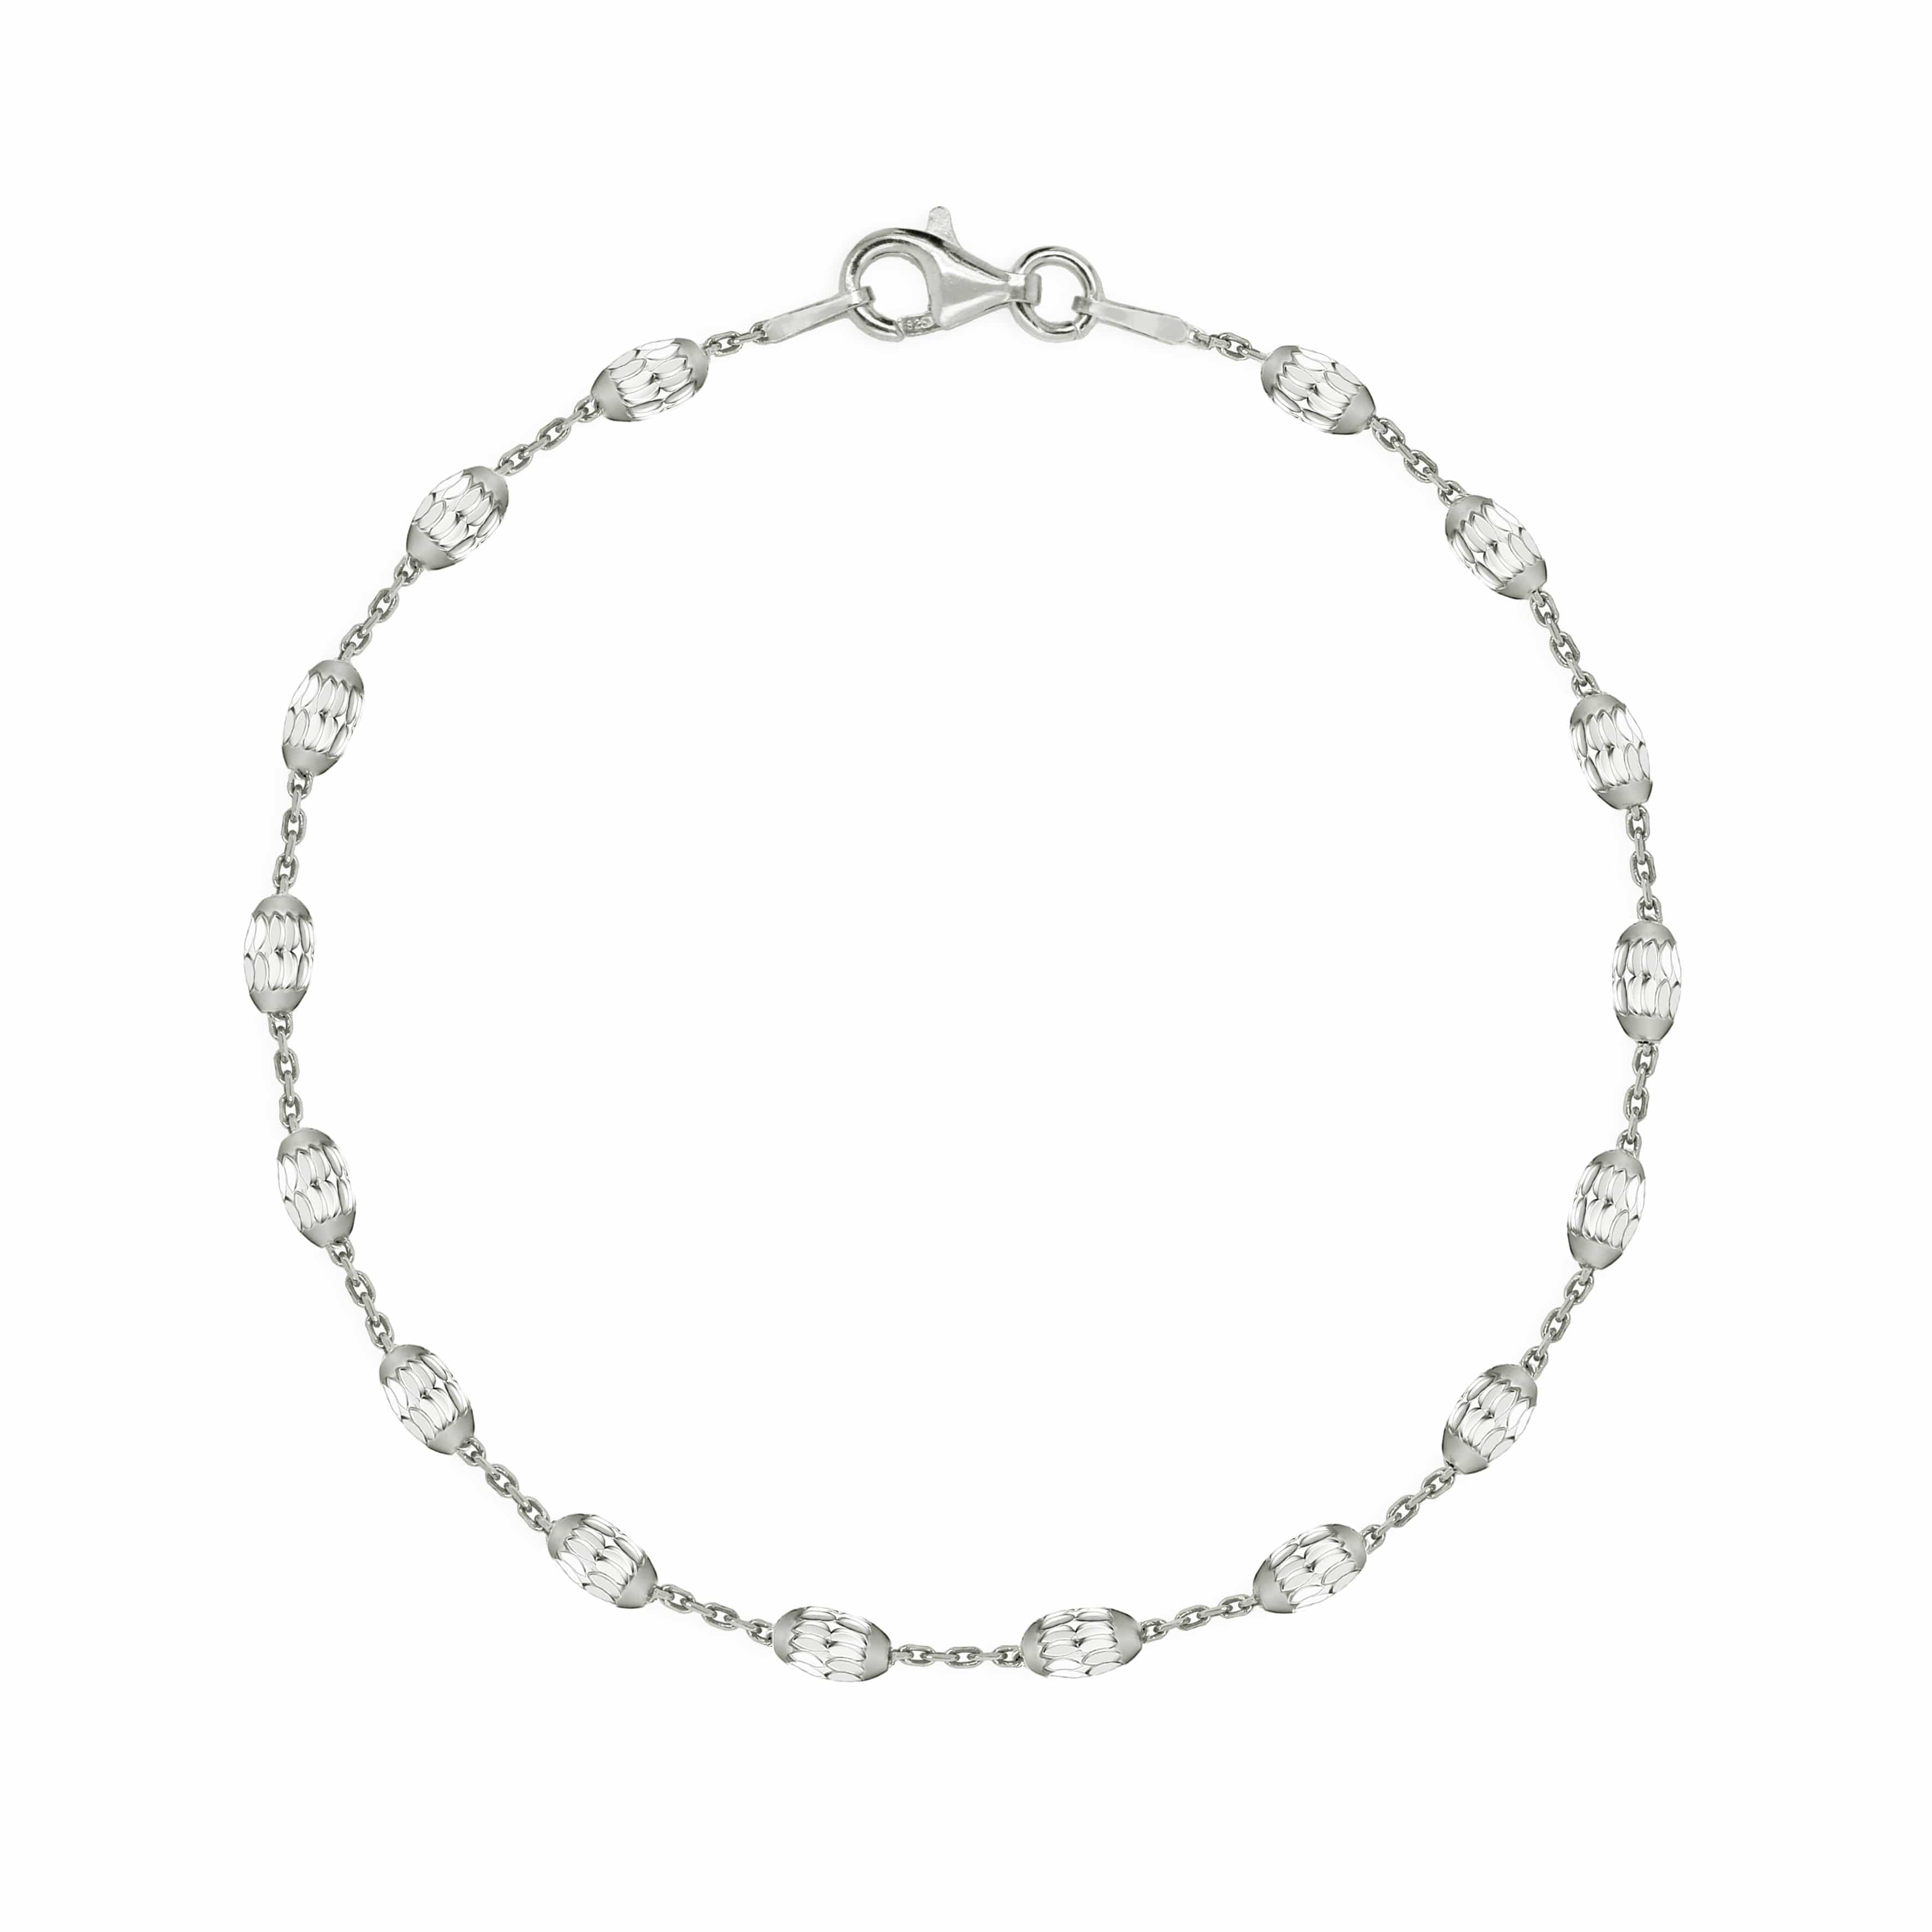 Lynora Jewellery Bracelet 7.5" / Sterling Silver Geobeads Bracelet Sterling Silver